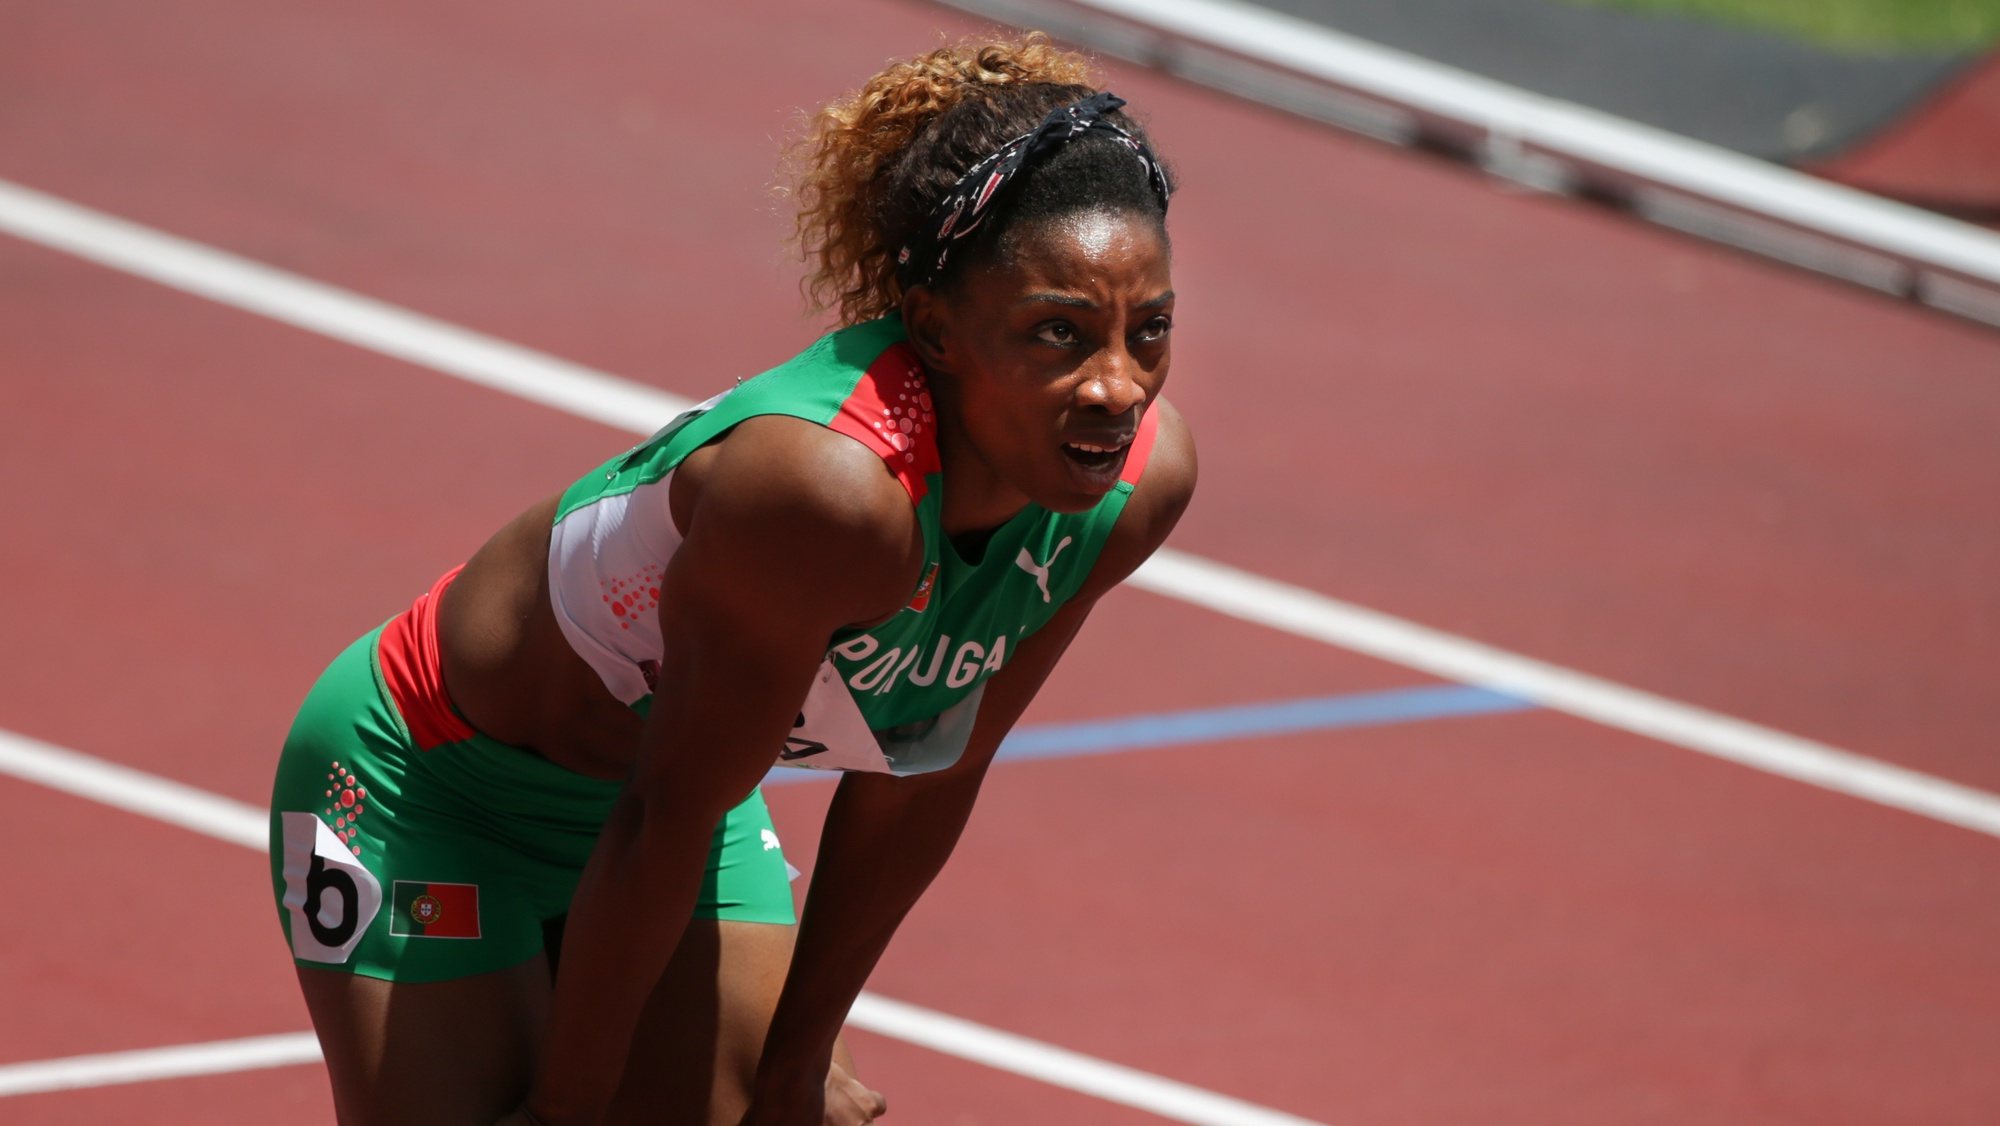 A atleta portuguesa Lorène Bazolo qualificou-se para as semifinais da prova dos 200 metros dos Jogos Olímpicos Tóquio2020, ao terminar em segundo lugar na quinta série de eliminatórias, com o tempo de 23,21 segundos, no Estádio Olimpico de Tóquio, 02 de agosto de 2021. TIAGO PETINGA/LUSA